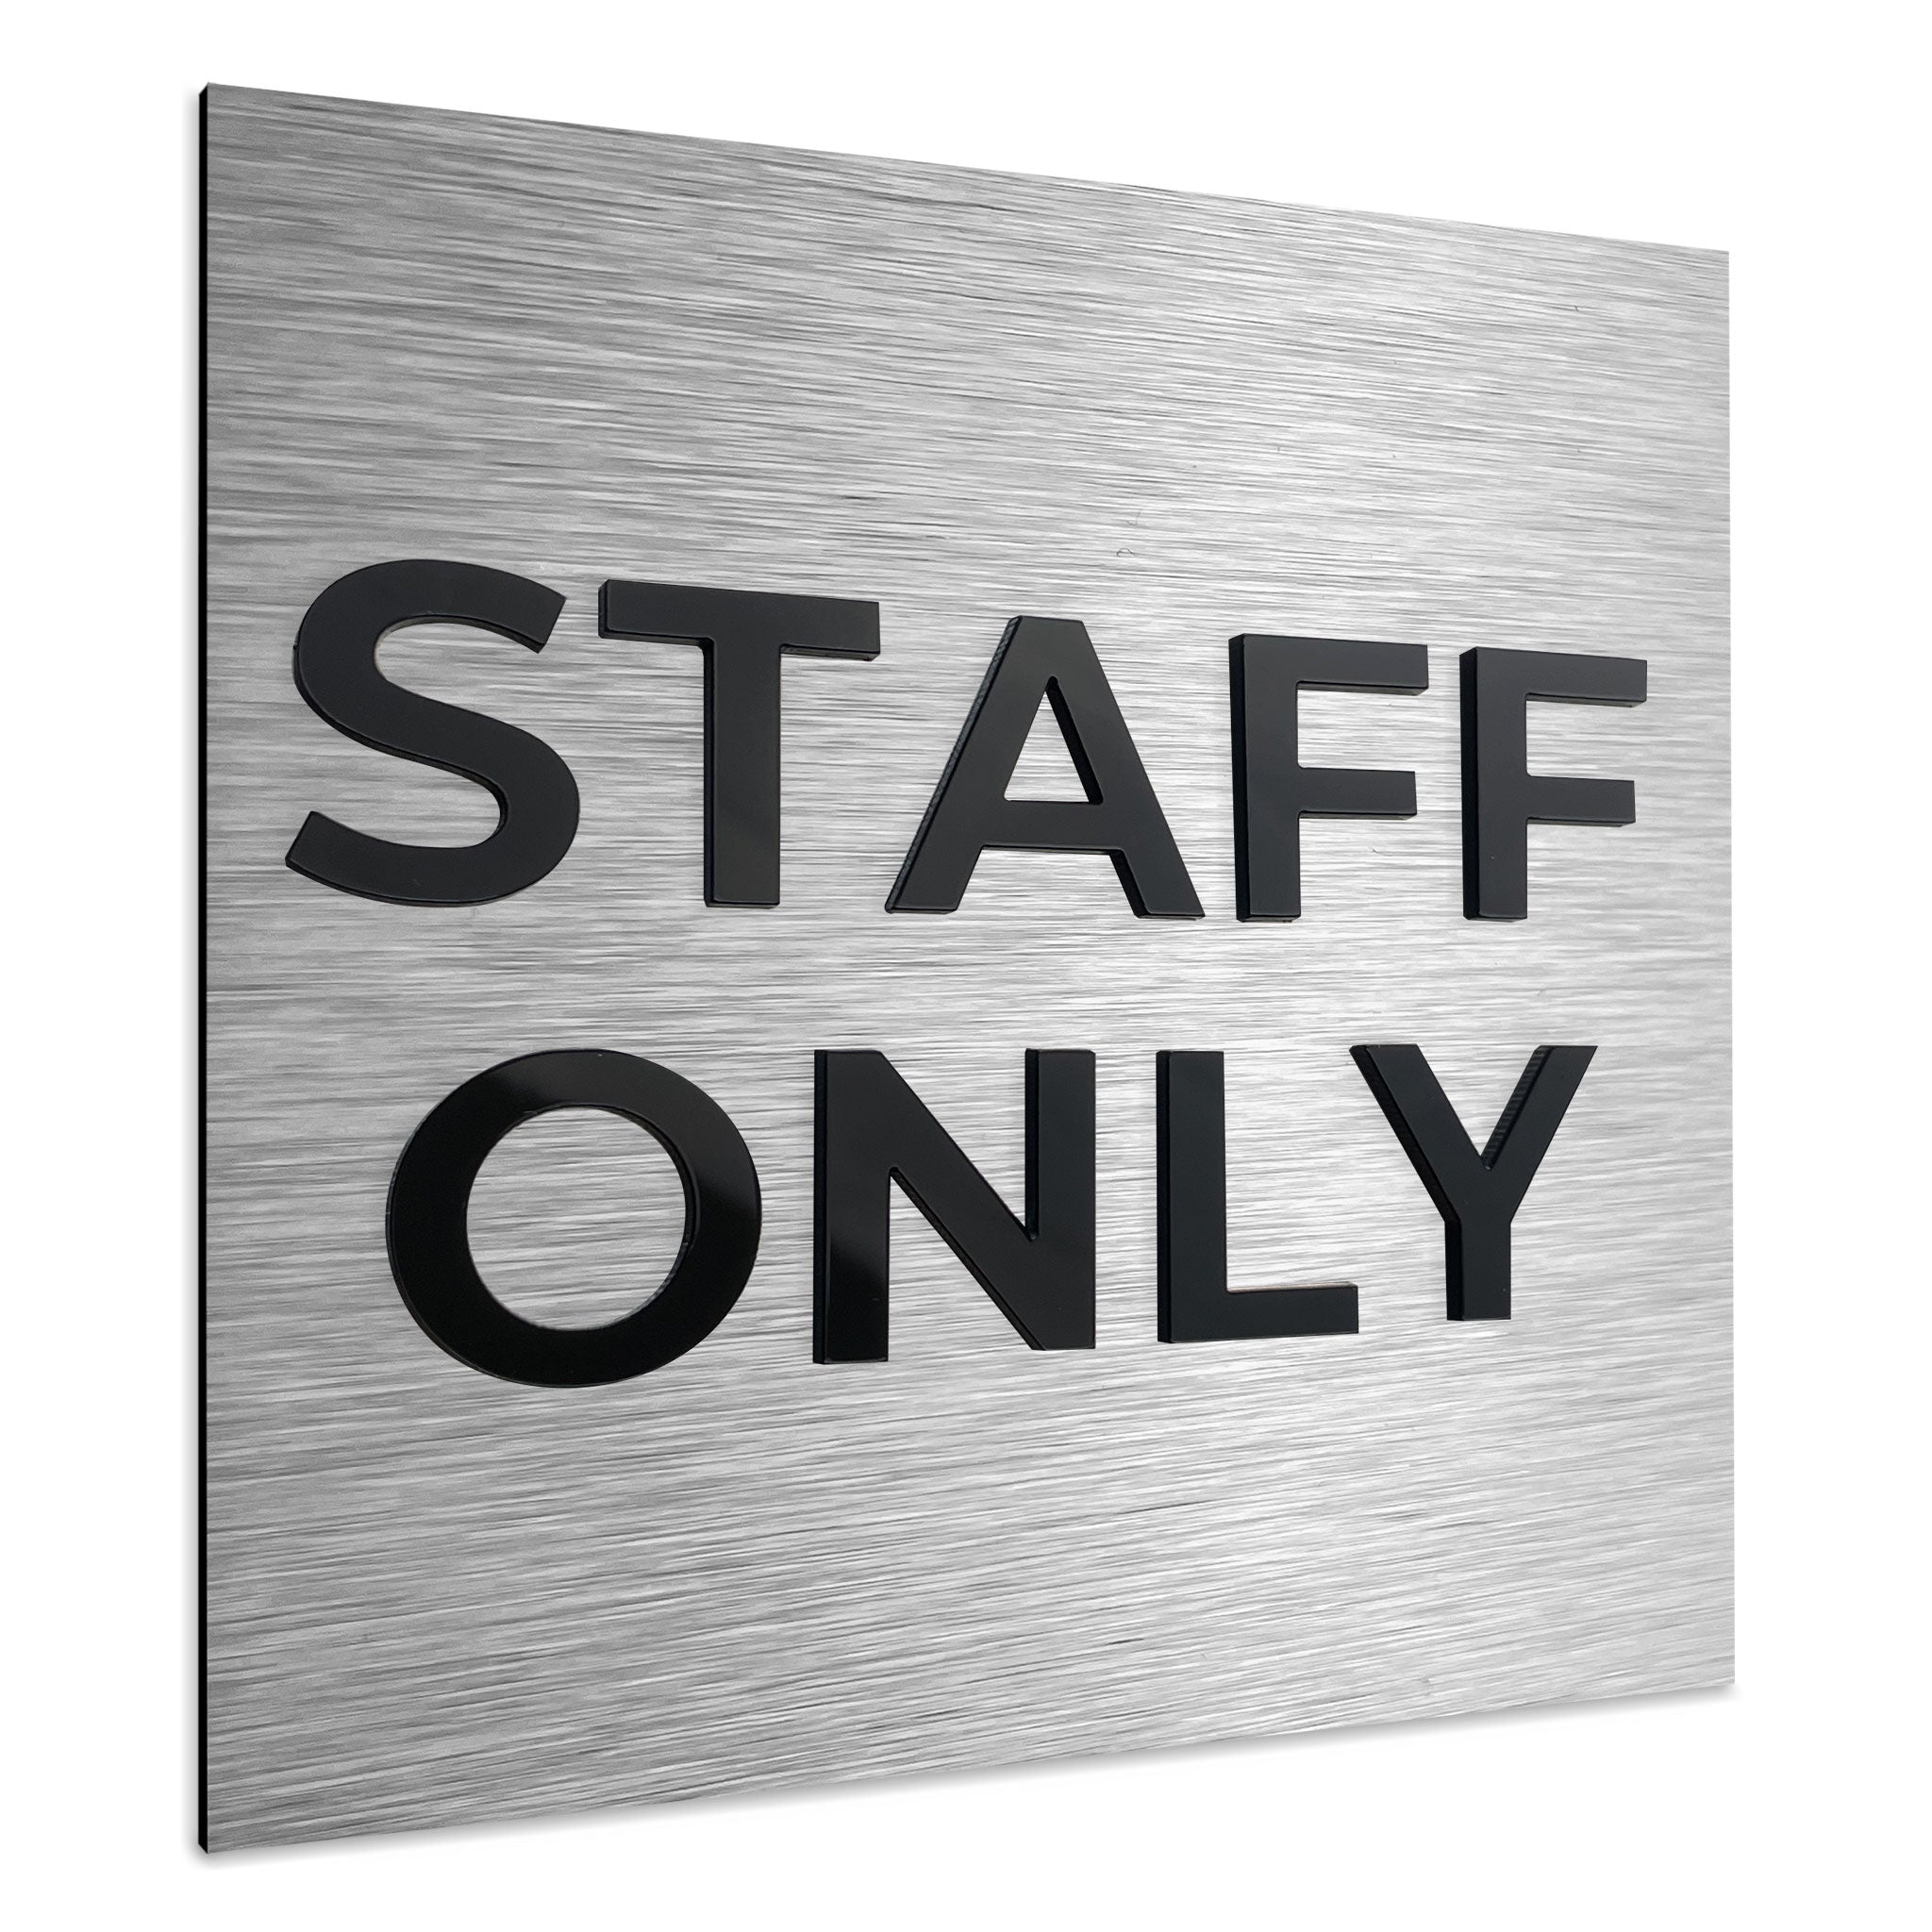 STAFF ONLY SIGN - ALUMADESIGNCO Door Signs - Custom Door Signs For Business & Office